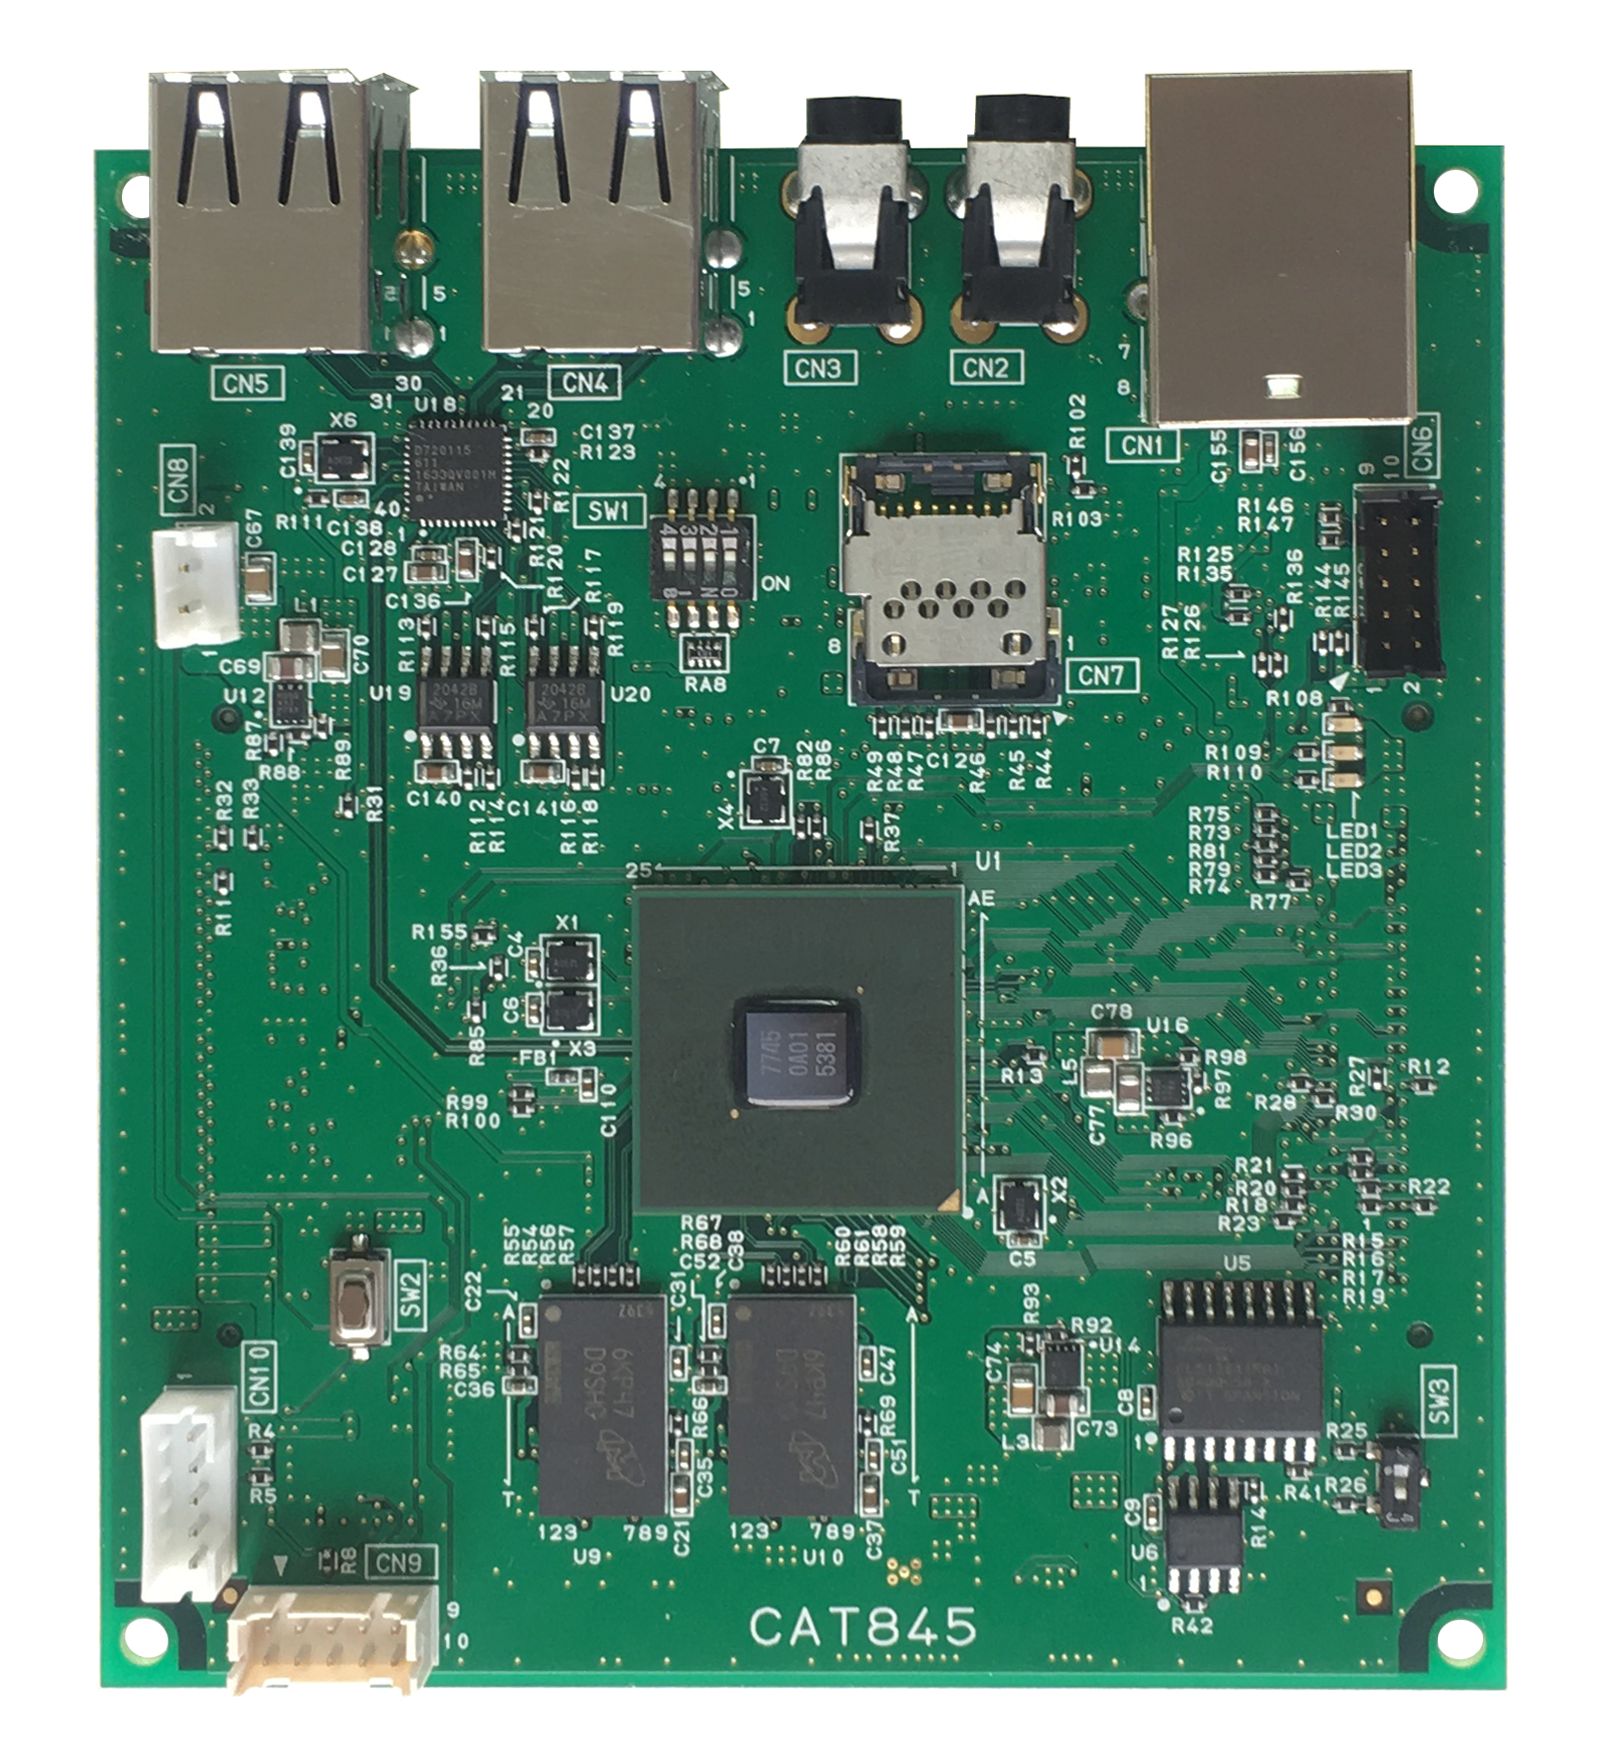 シリコンリナックス製．型式 CAT845仕様 RZ/G1E-PF(CortexA7-Dual)，RAM1G，ROM64M，LAN，シリアル，時計IC搭載 組み込みLinux基板